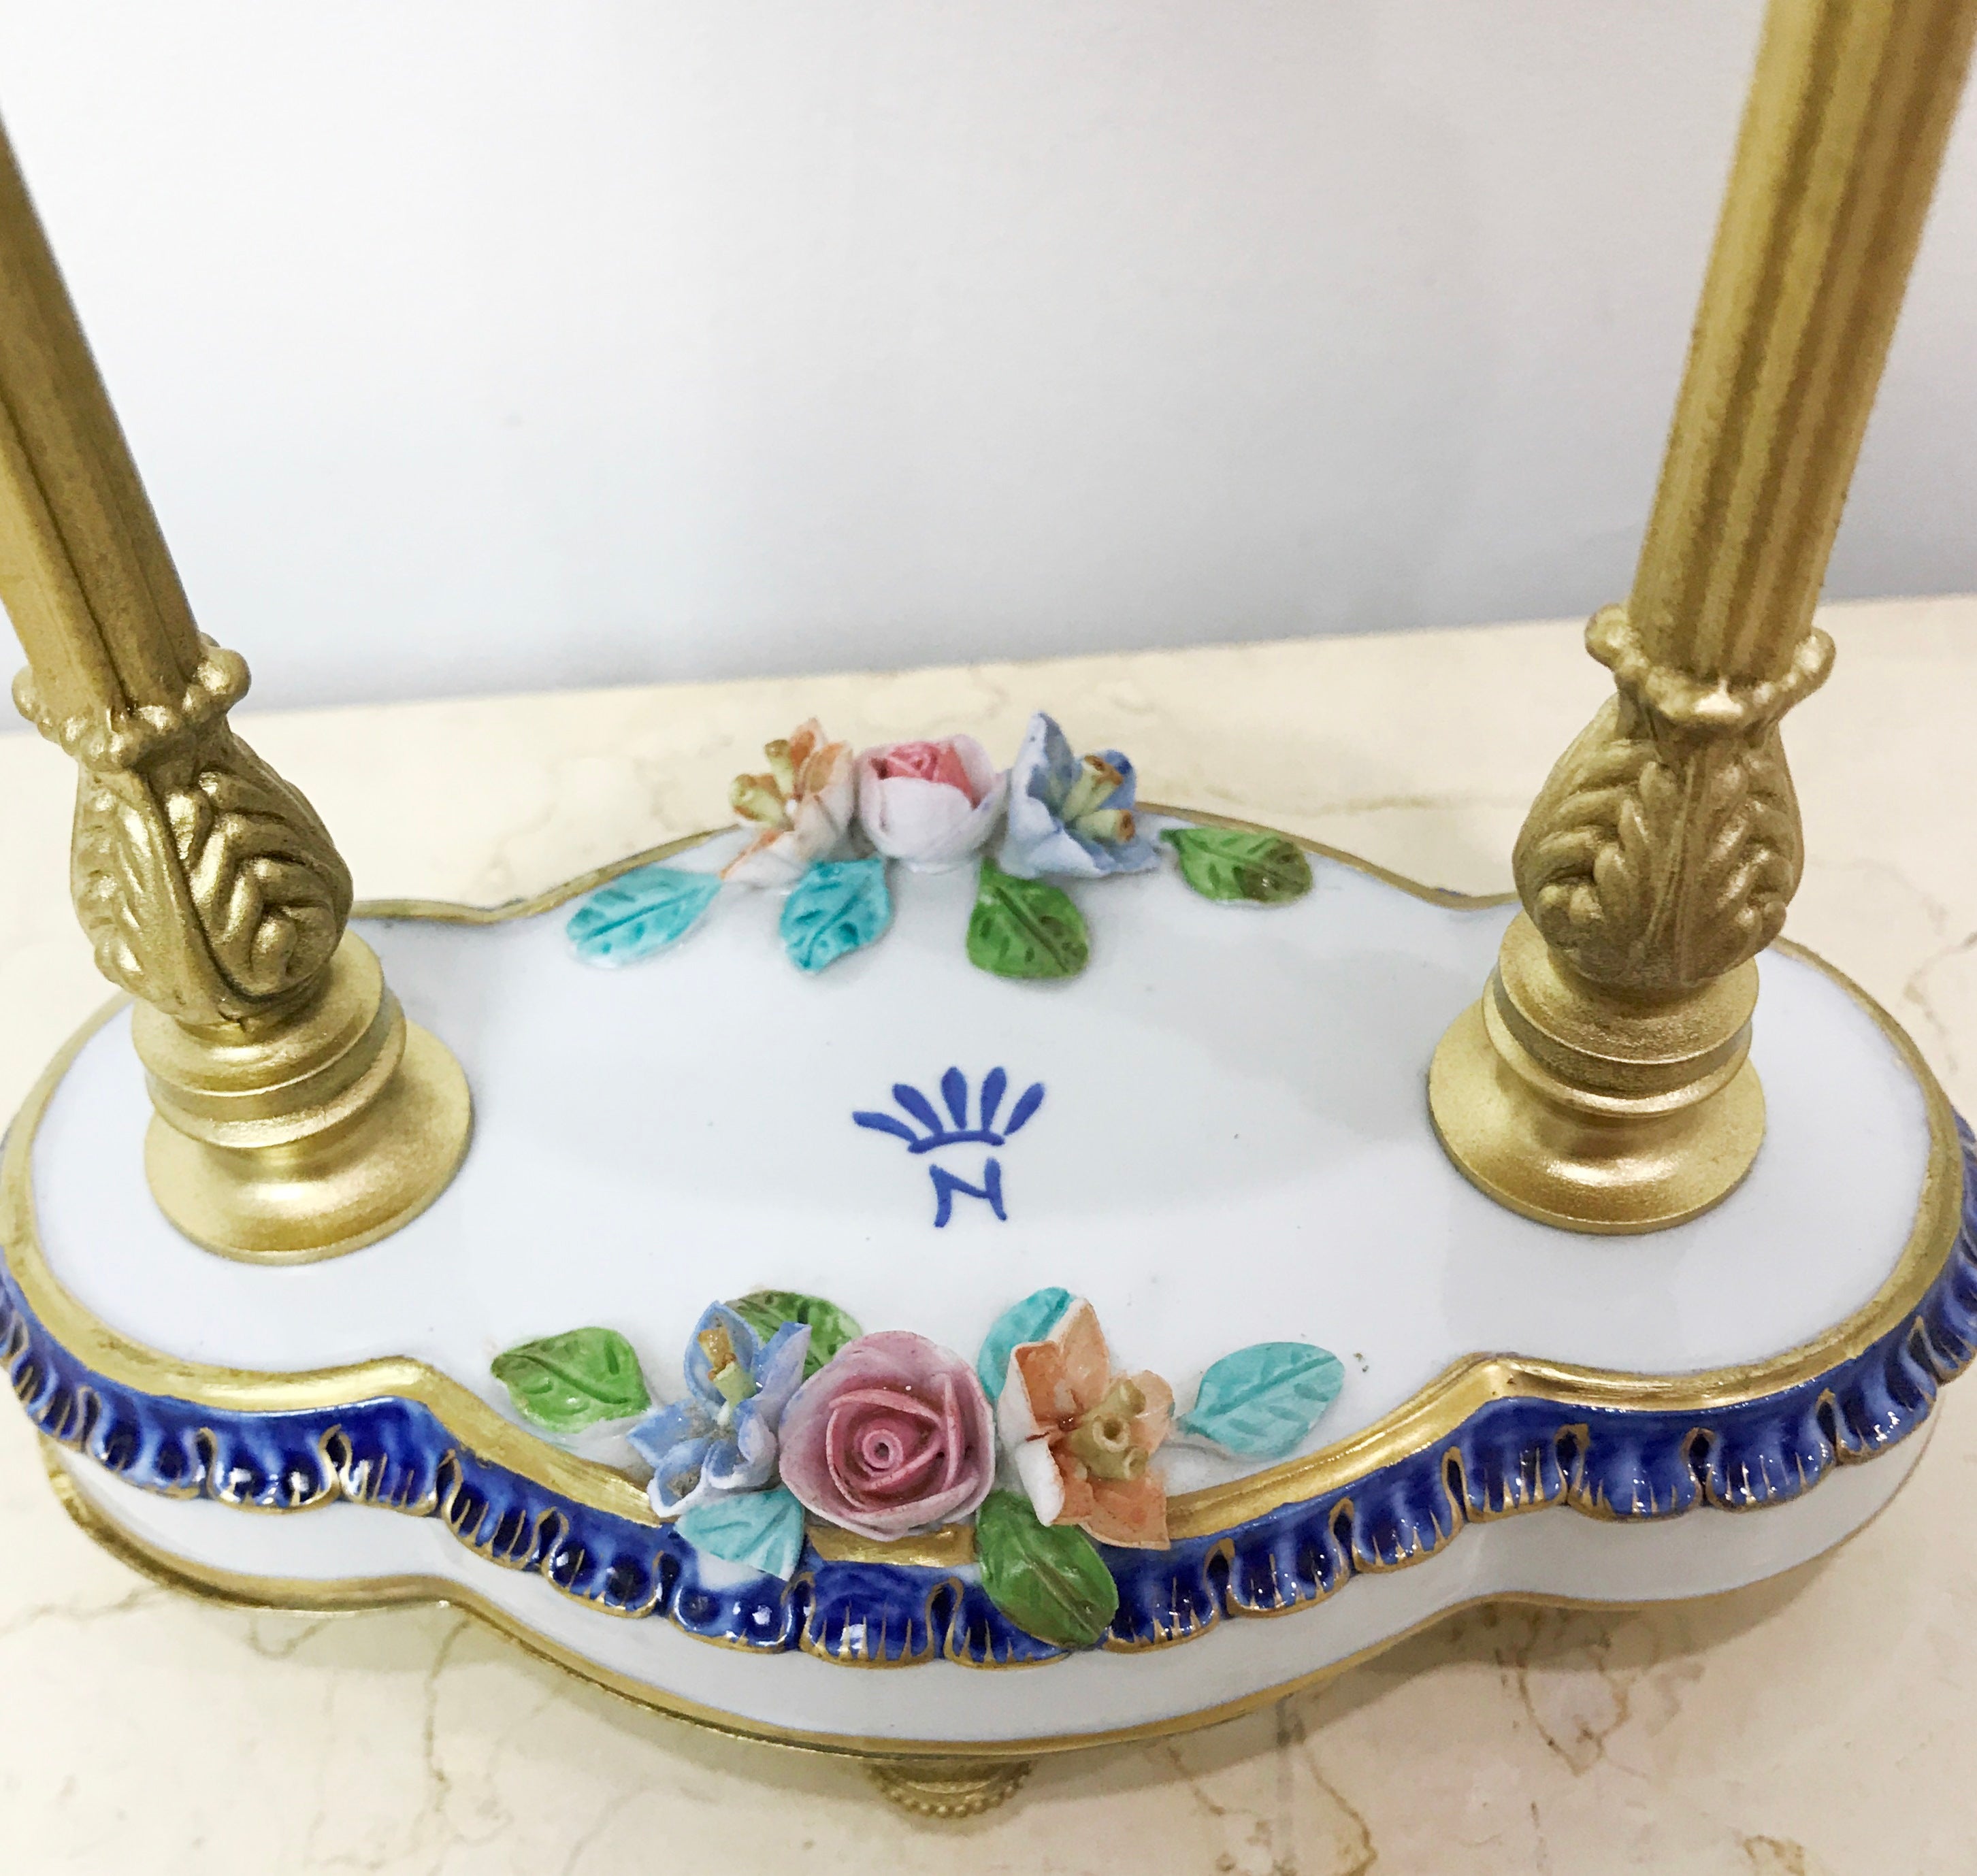 Vintage Italian Porcelain Mantel Clock | eXibit collection